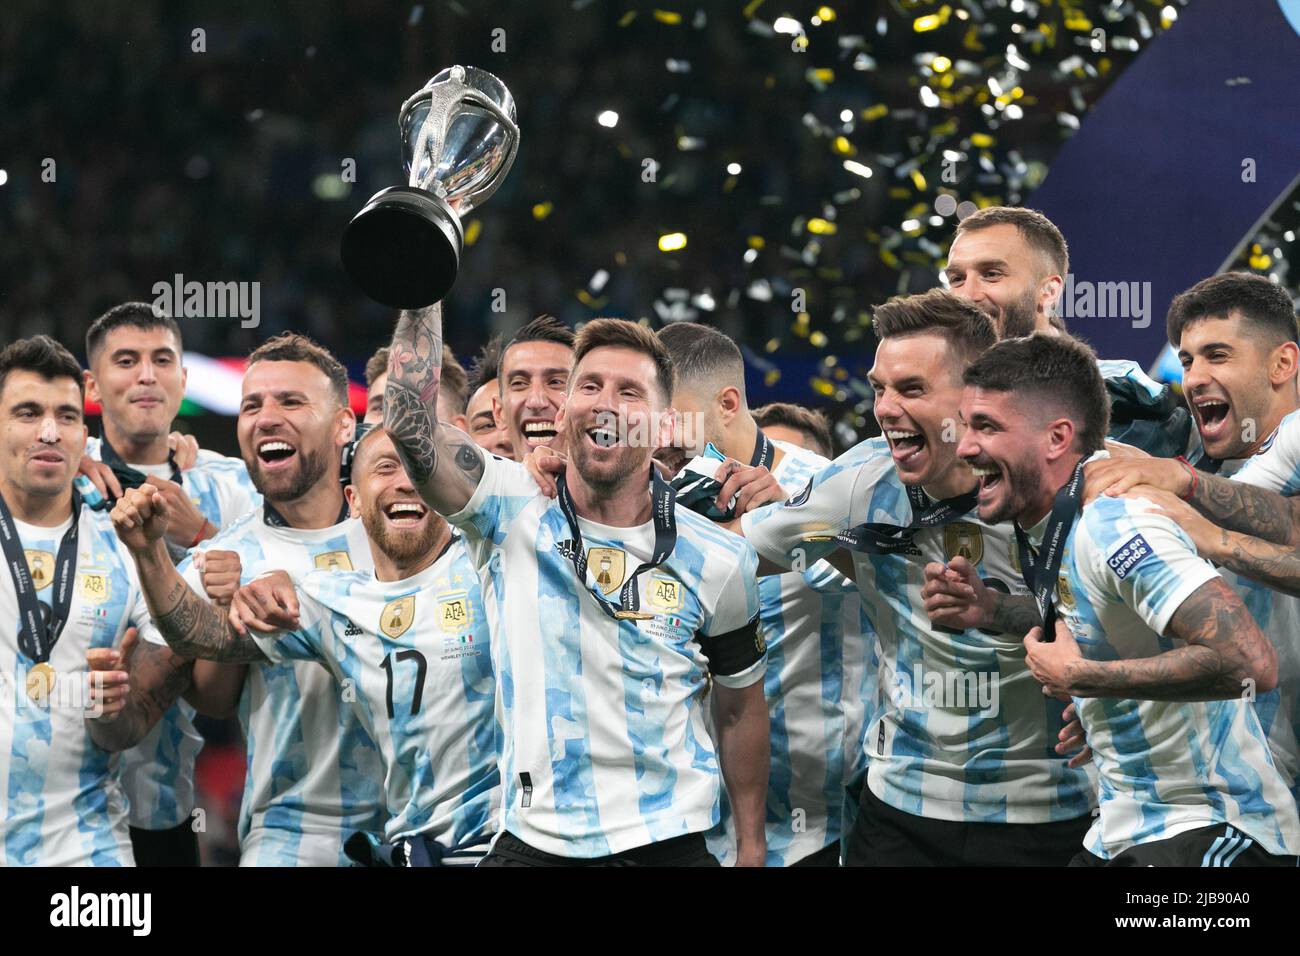 Lionel Messi (c) d'Argentine lève la coupe et célèbre avec ses copains d'équipe après le match Italie contre Argentine - Finalissima 2022 au stade Wembley sur 1 juin 2022 à Londres, Angleterre.(MB Media) Banque D'Images